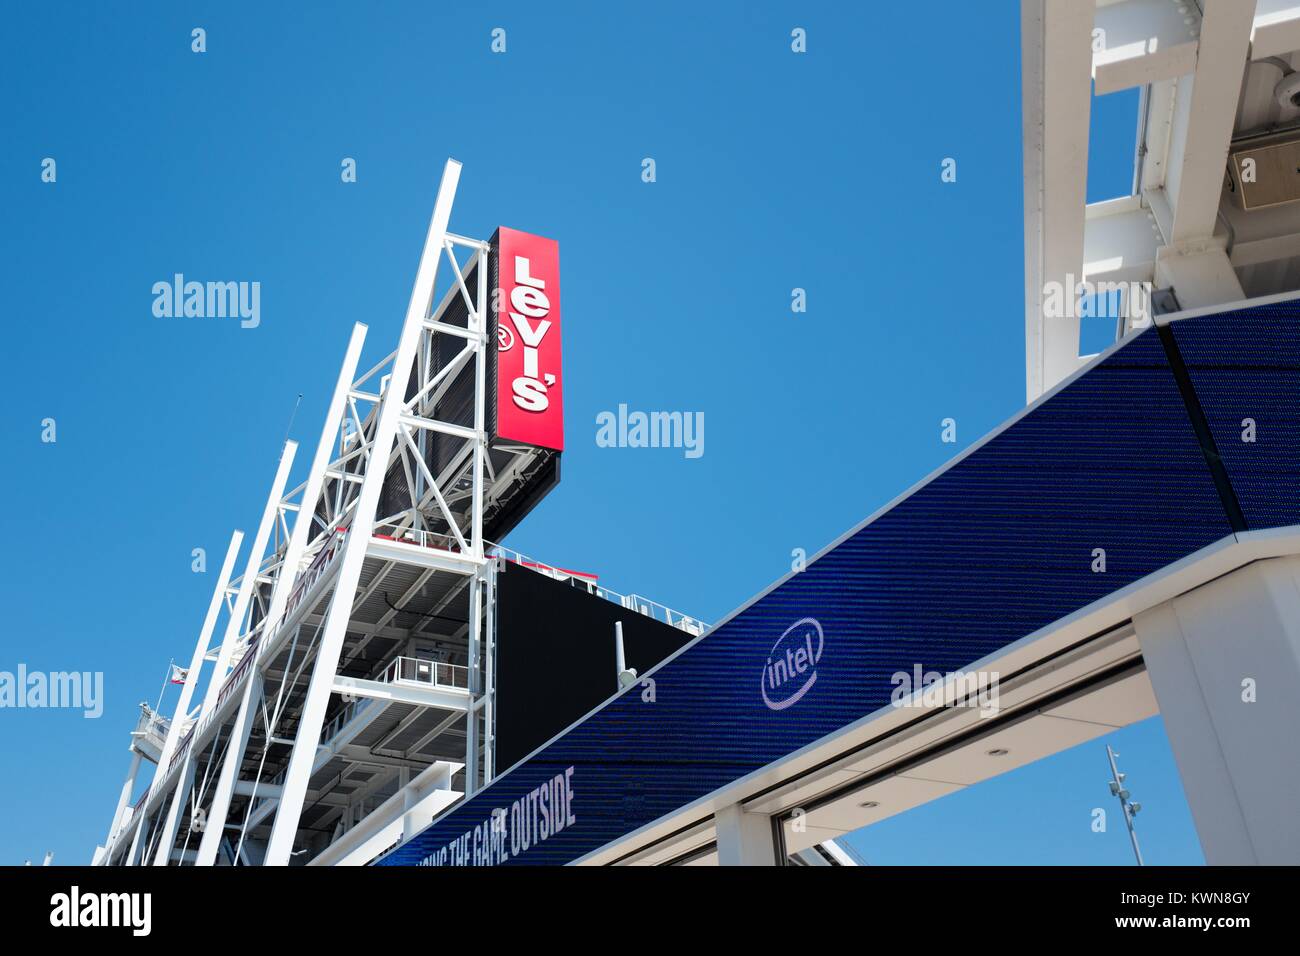 Señal LED con logotipo de Intel en Levi's Stadium, hogar de los San Francisco 49ers equipo de fútbol, en el Silicon Valley, la ciudad de Santa Clara, California, 25 de julio de 2017. Foto de stock